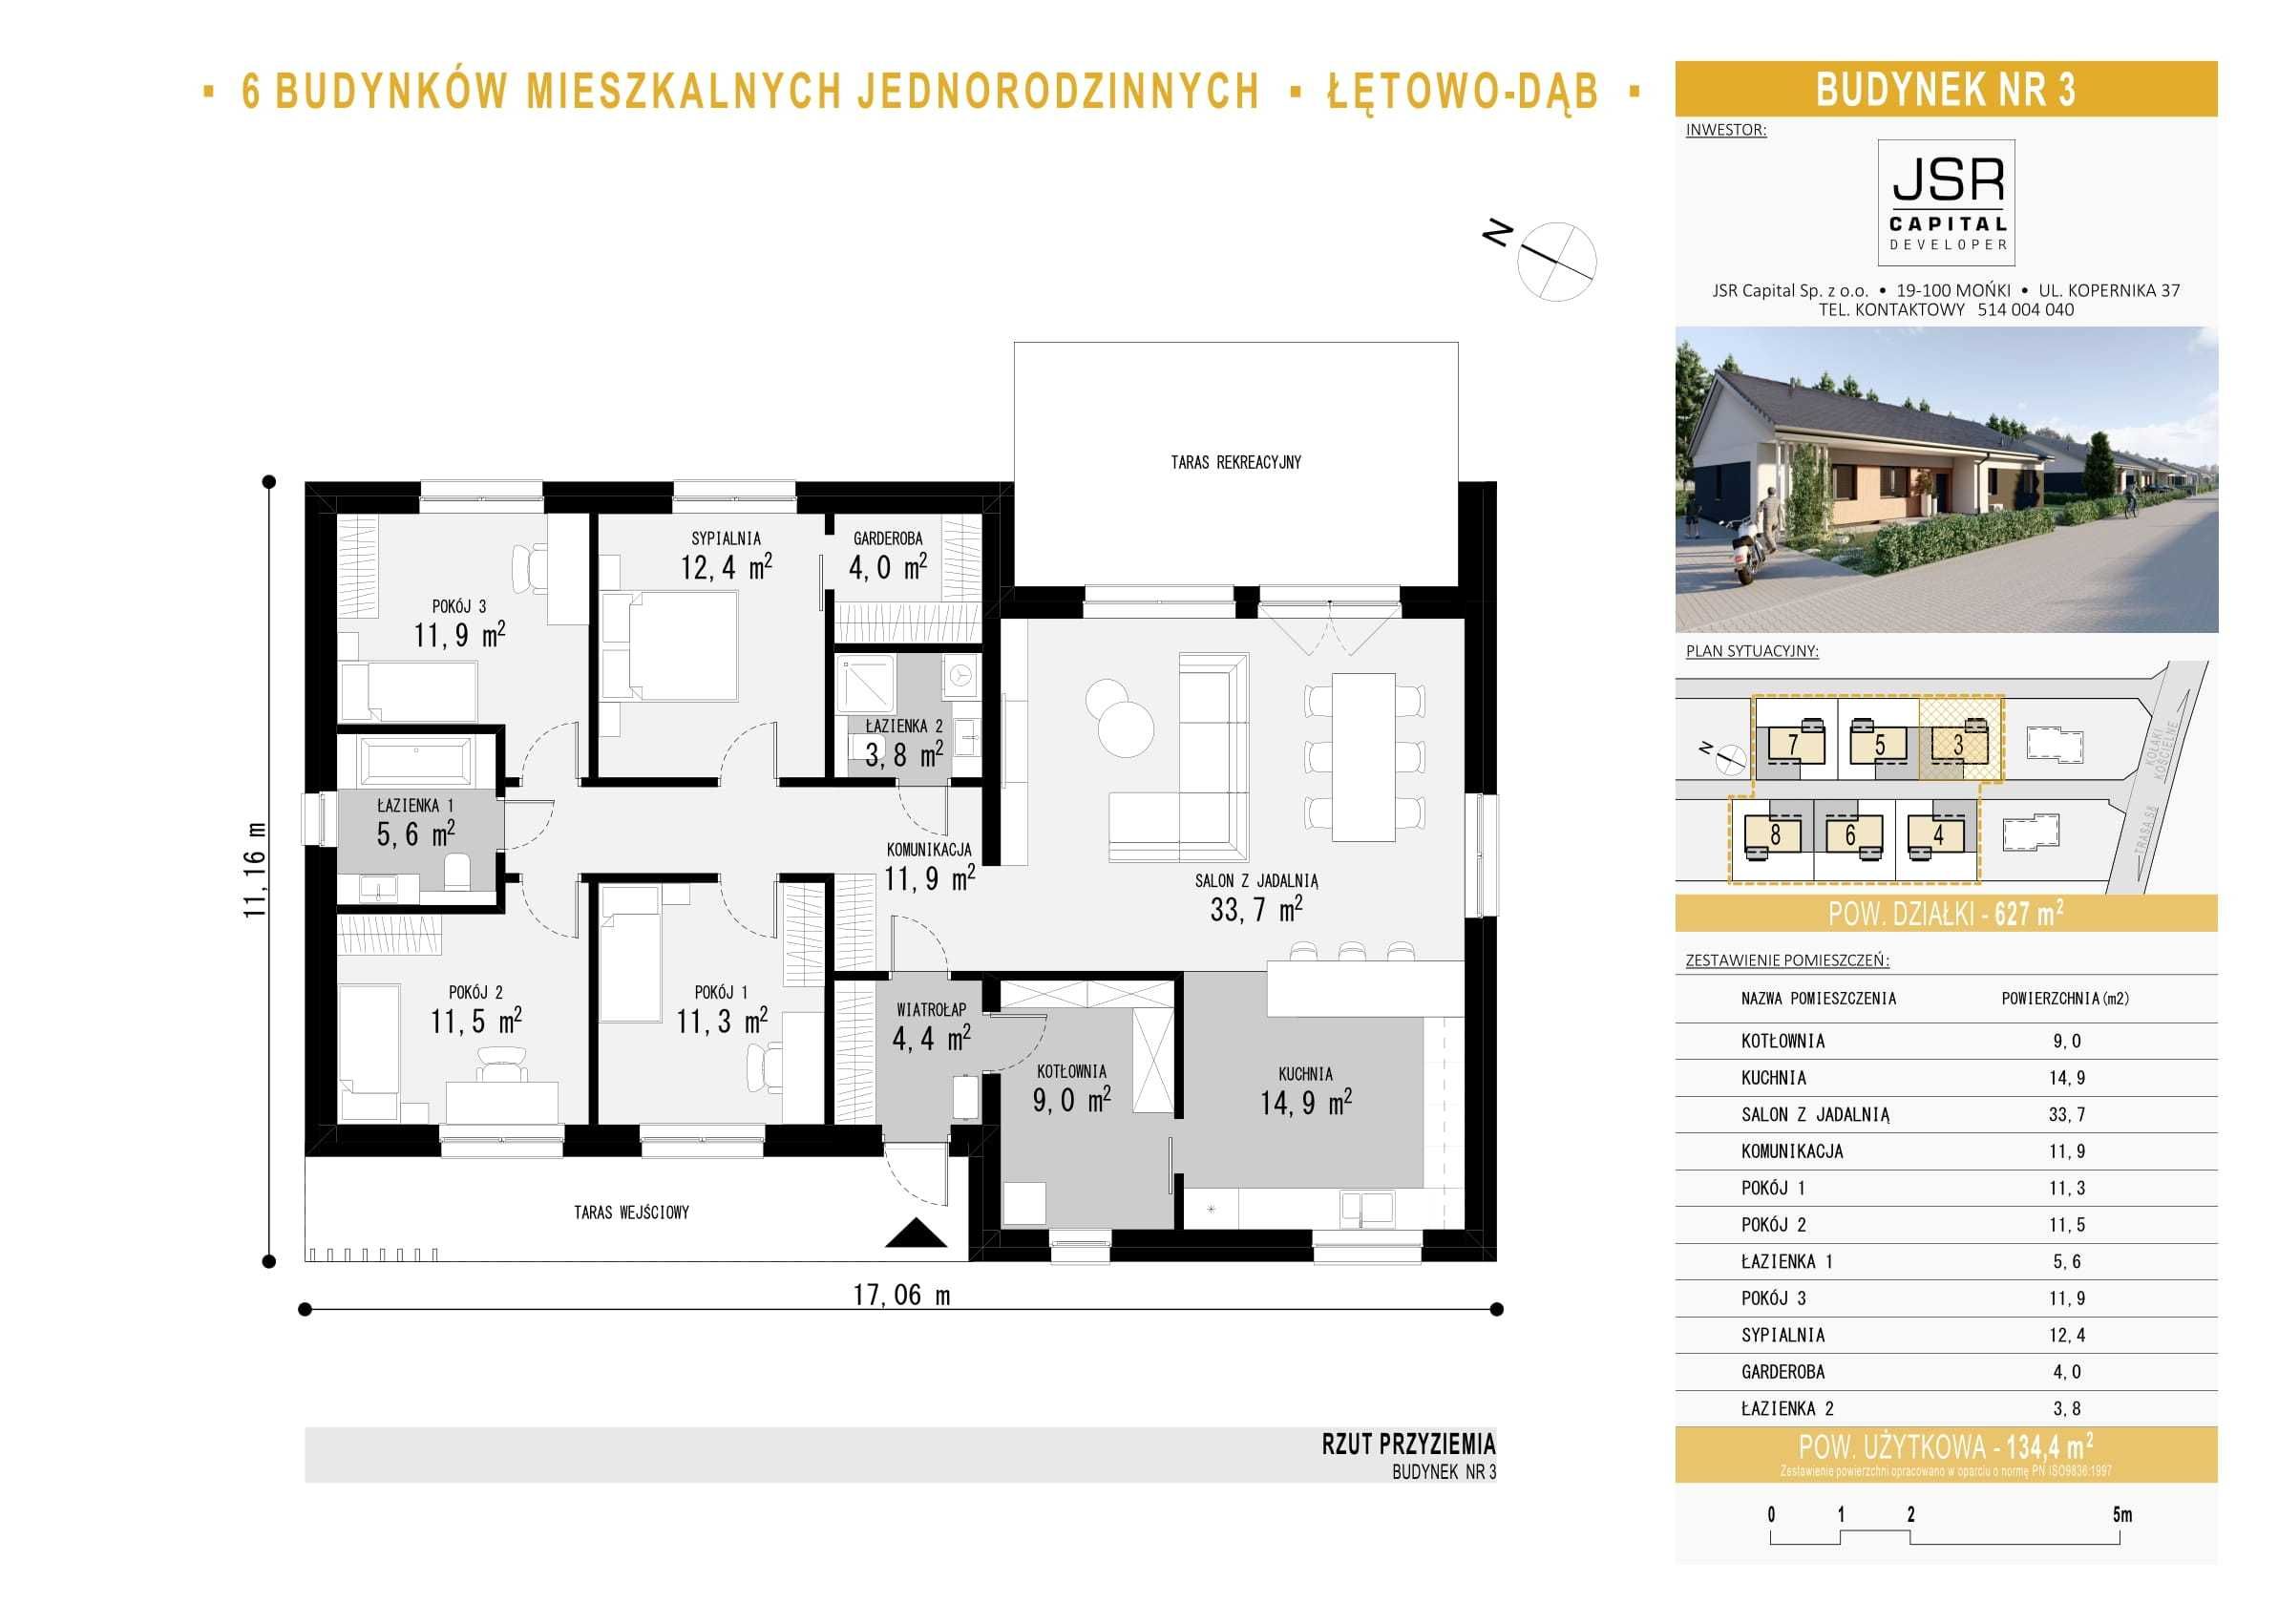 Dom - parterowy, nowy wolnostojący pow. 135 m2 + 42m2 poddasza